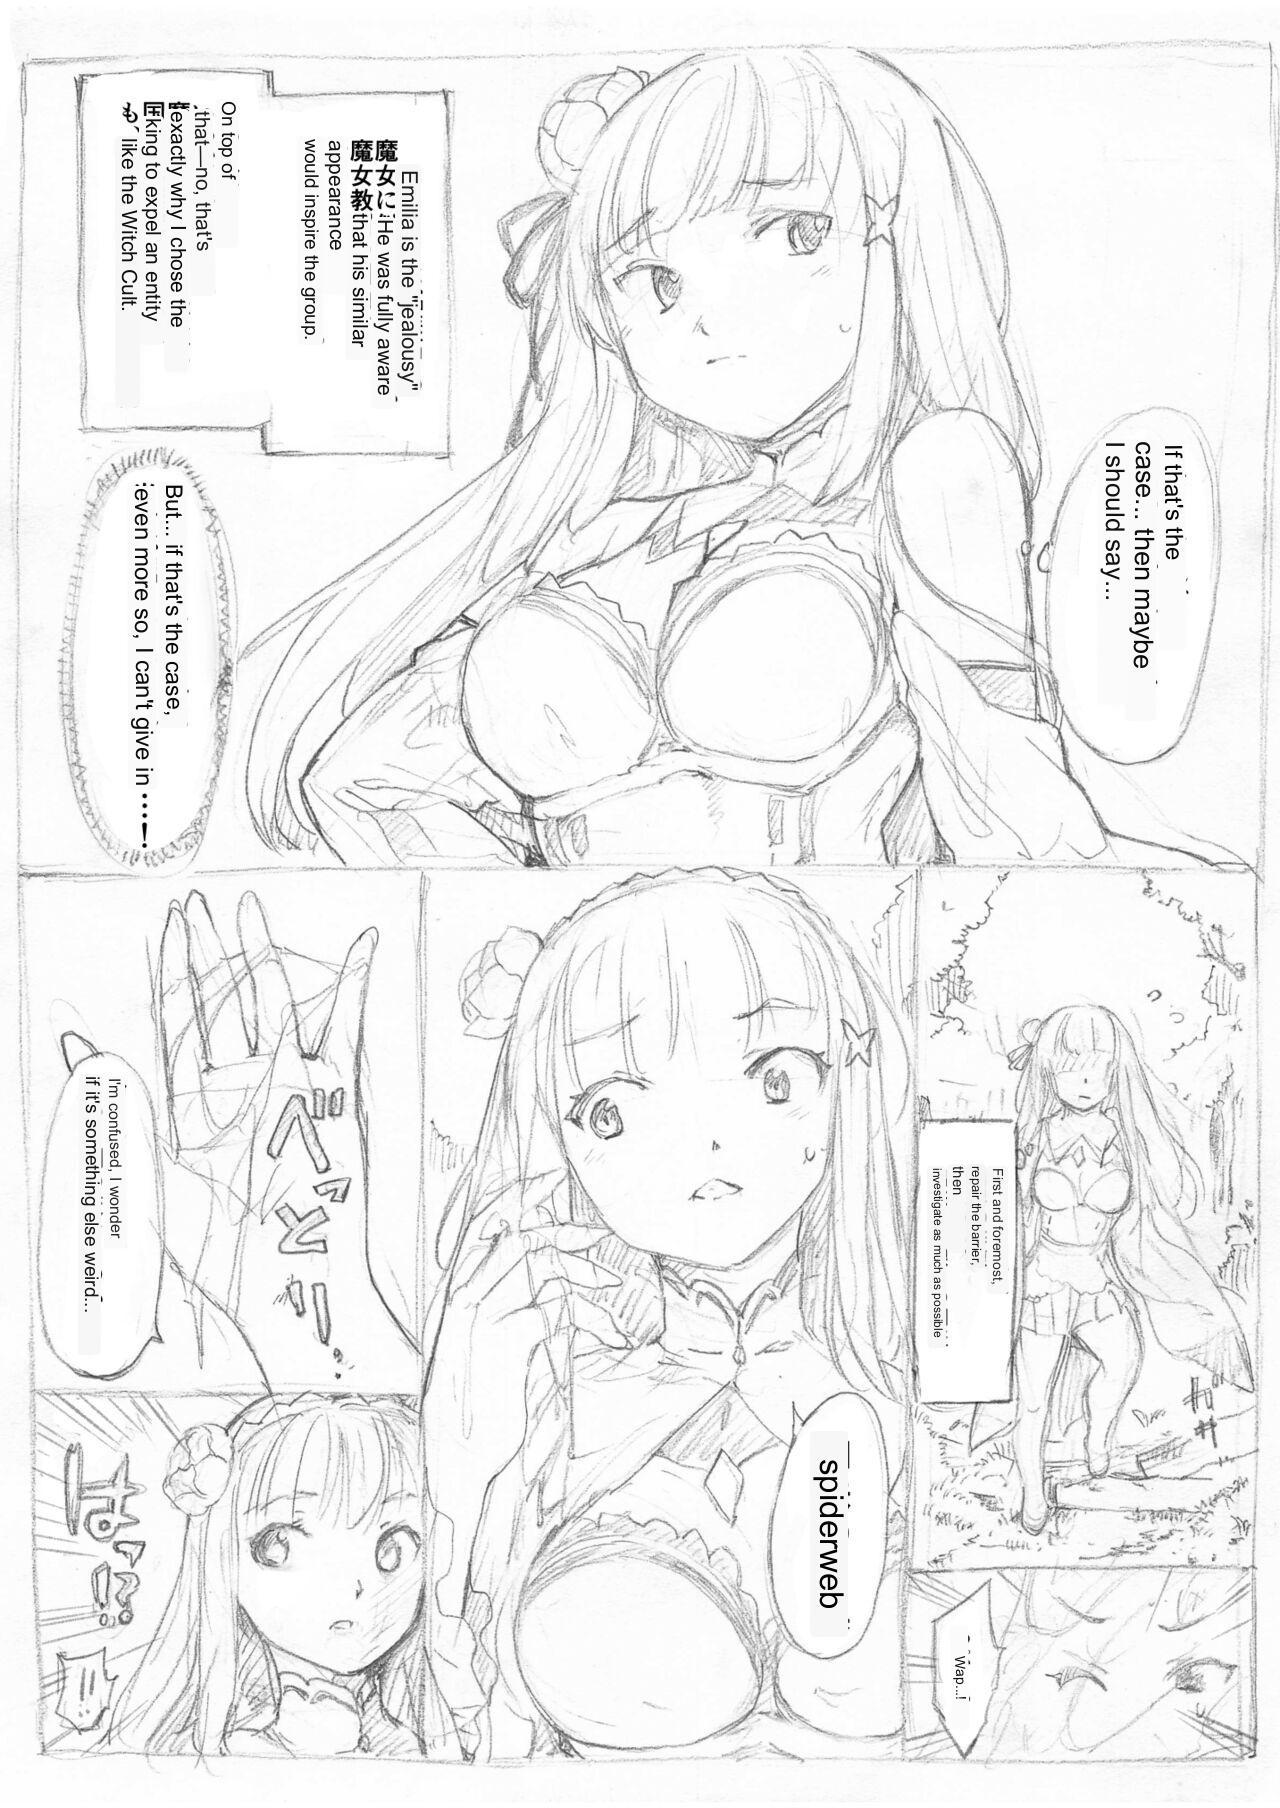 Mexico [Fujiwara Shunichi] Emilia Kumo Ito Kousoku Manga (Re: Zero kara Hajimeru Isekai Seikatsu) google translate - Original Interracial - Page 2